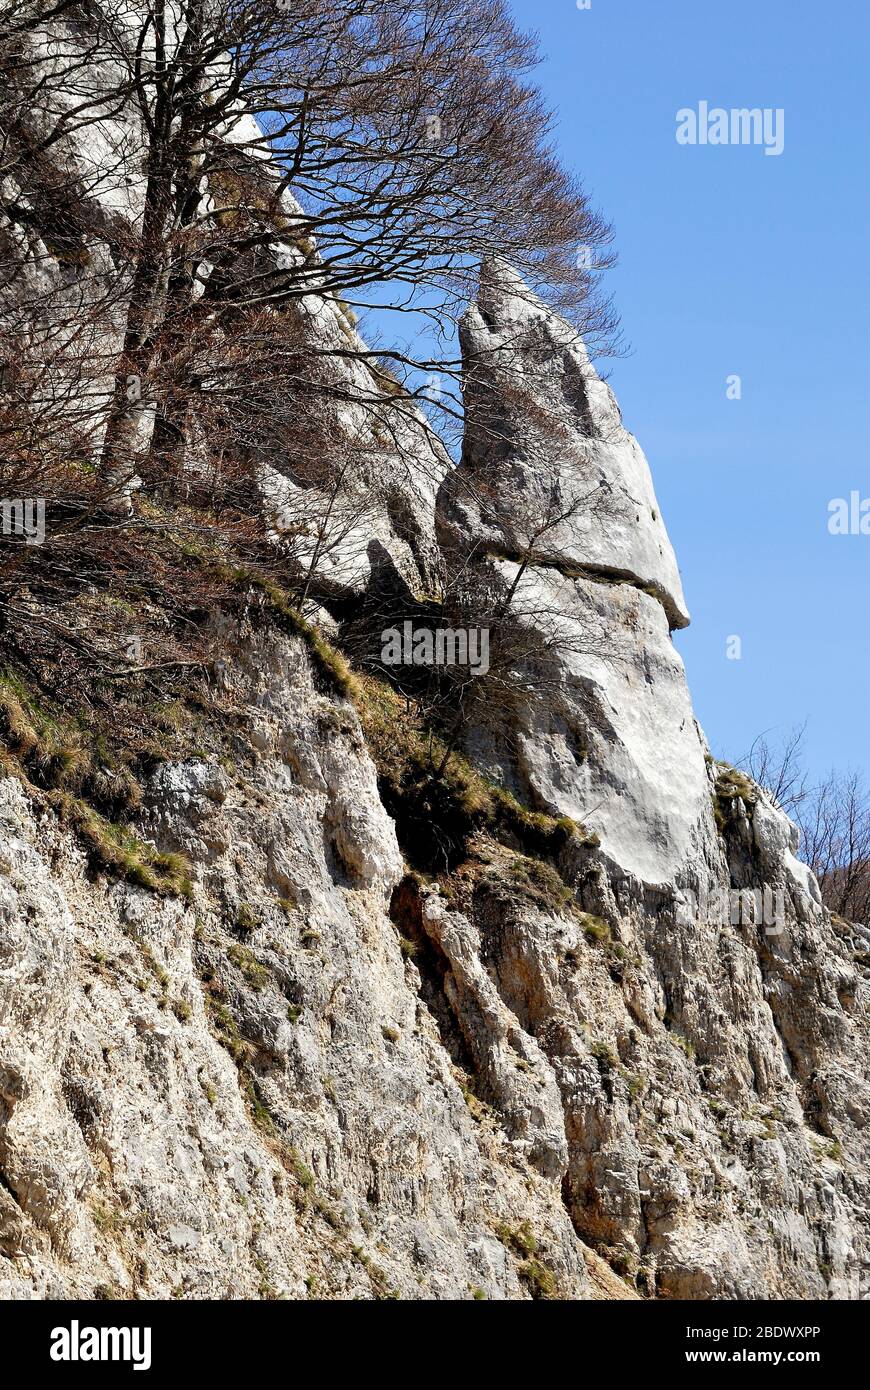 Un sommet de roche sur la montagne de Matese. Le Matese est une chaîne de montagnes dans le sud des Apennines, dans le sud de l'Italie. Banque D'Images